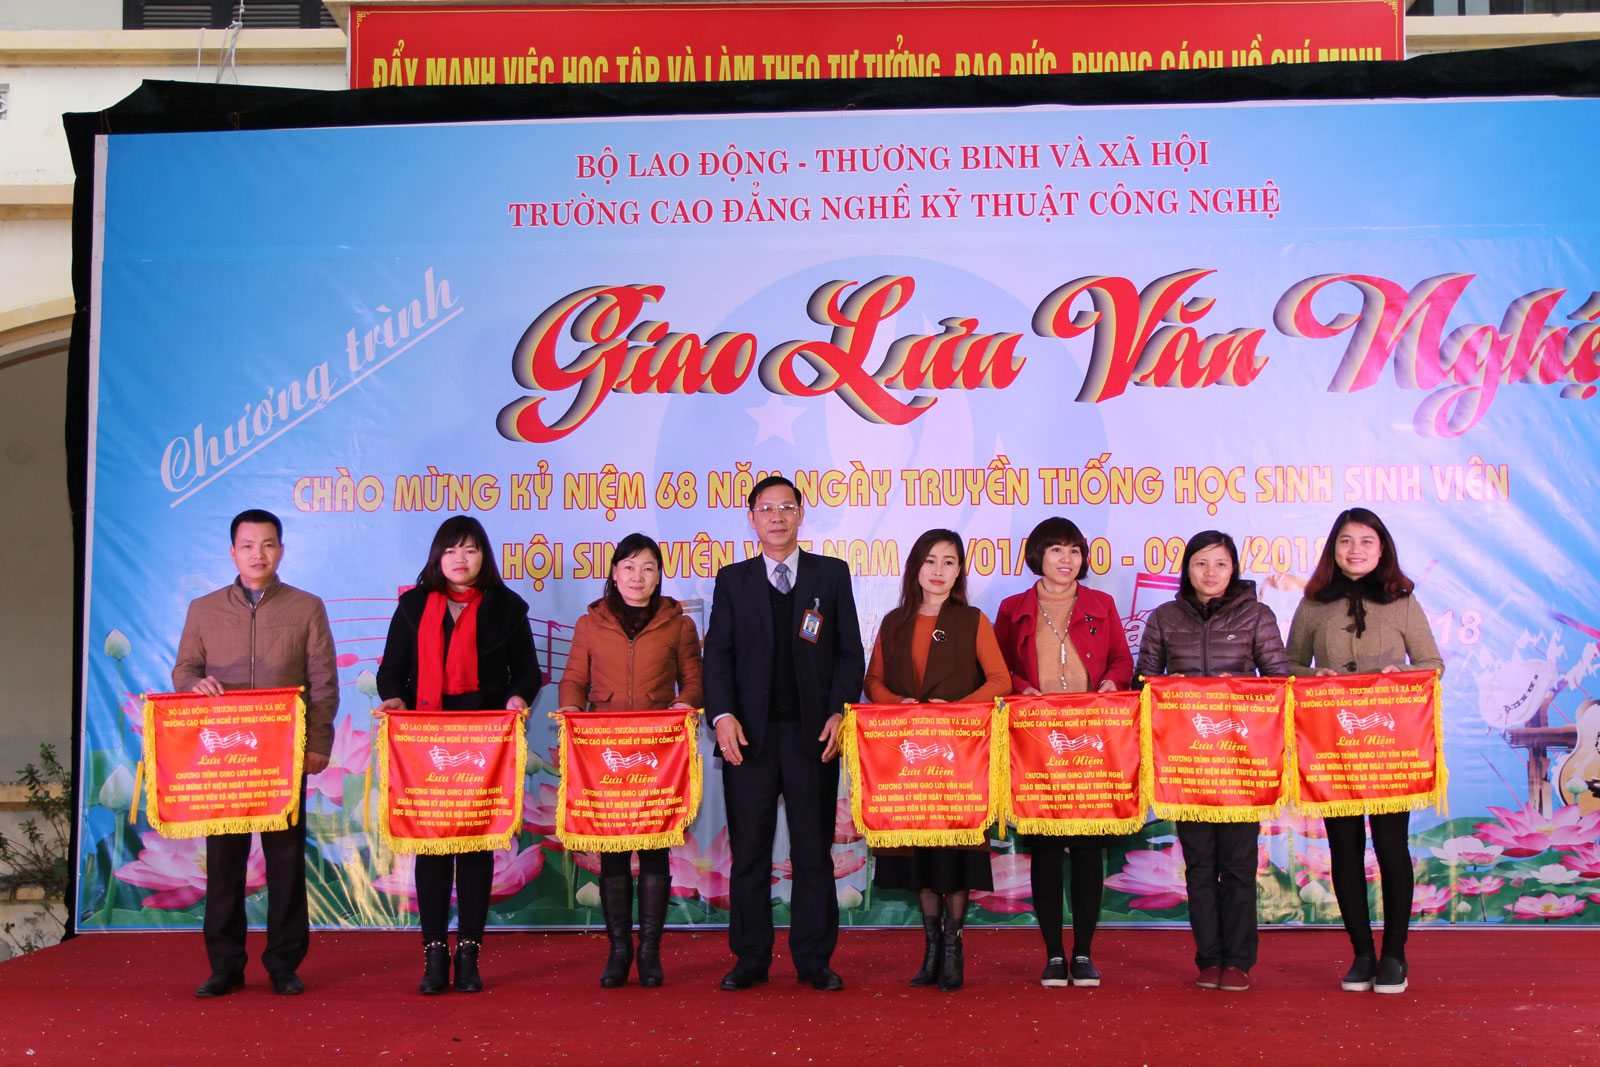 Chương trình giao lưu văn nghệ chào mừng kỷ niệm 68 năm Ngày truyền thống học sinh, sinh viên và Hội sinh viên Việt Nam